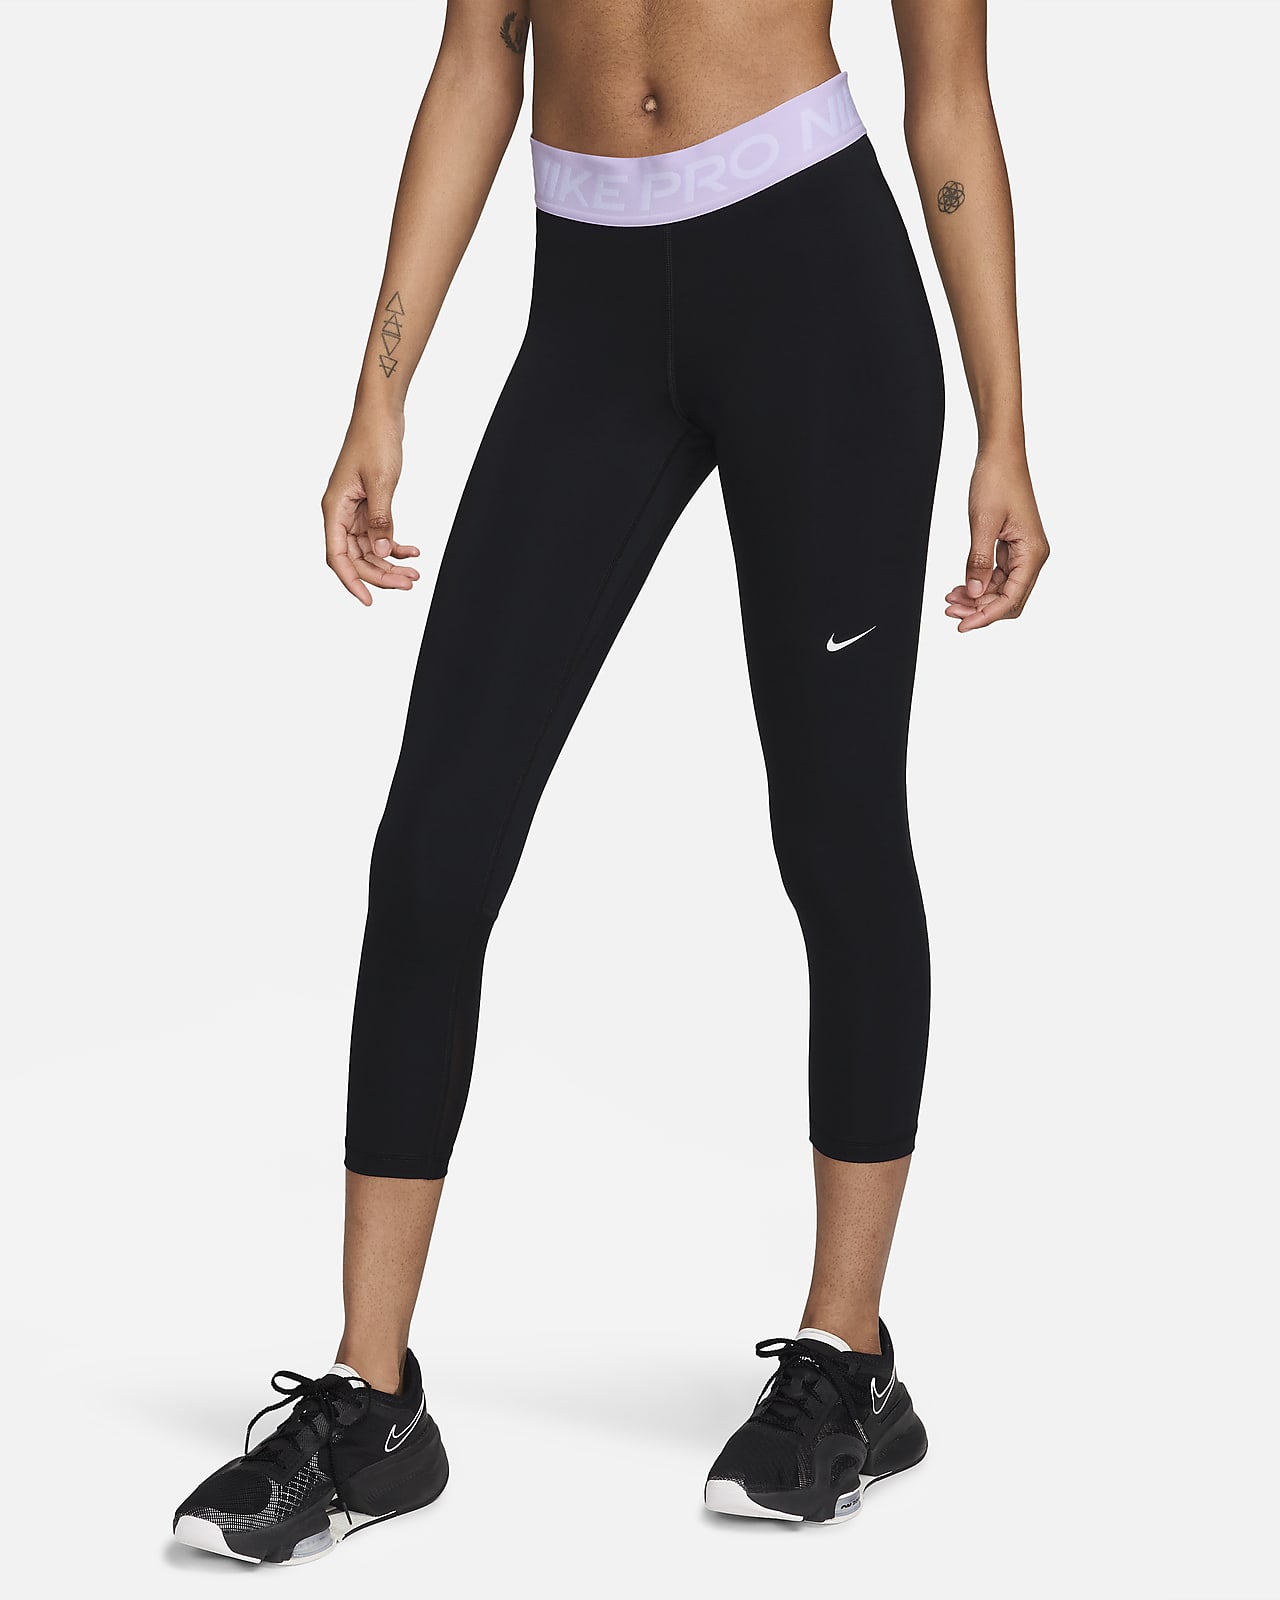 Nike Pro 365 verkürzte Leggings mit mittelhohem Bund und Mesheinsatz für Damen